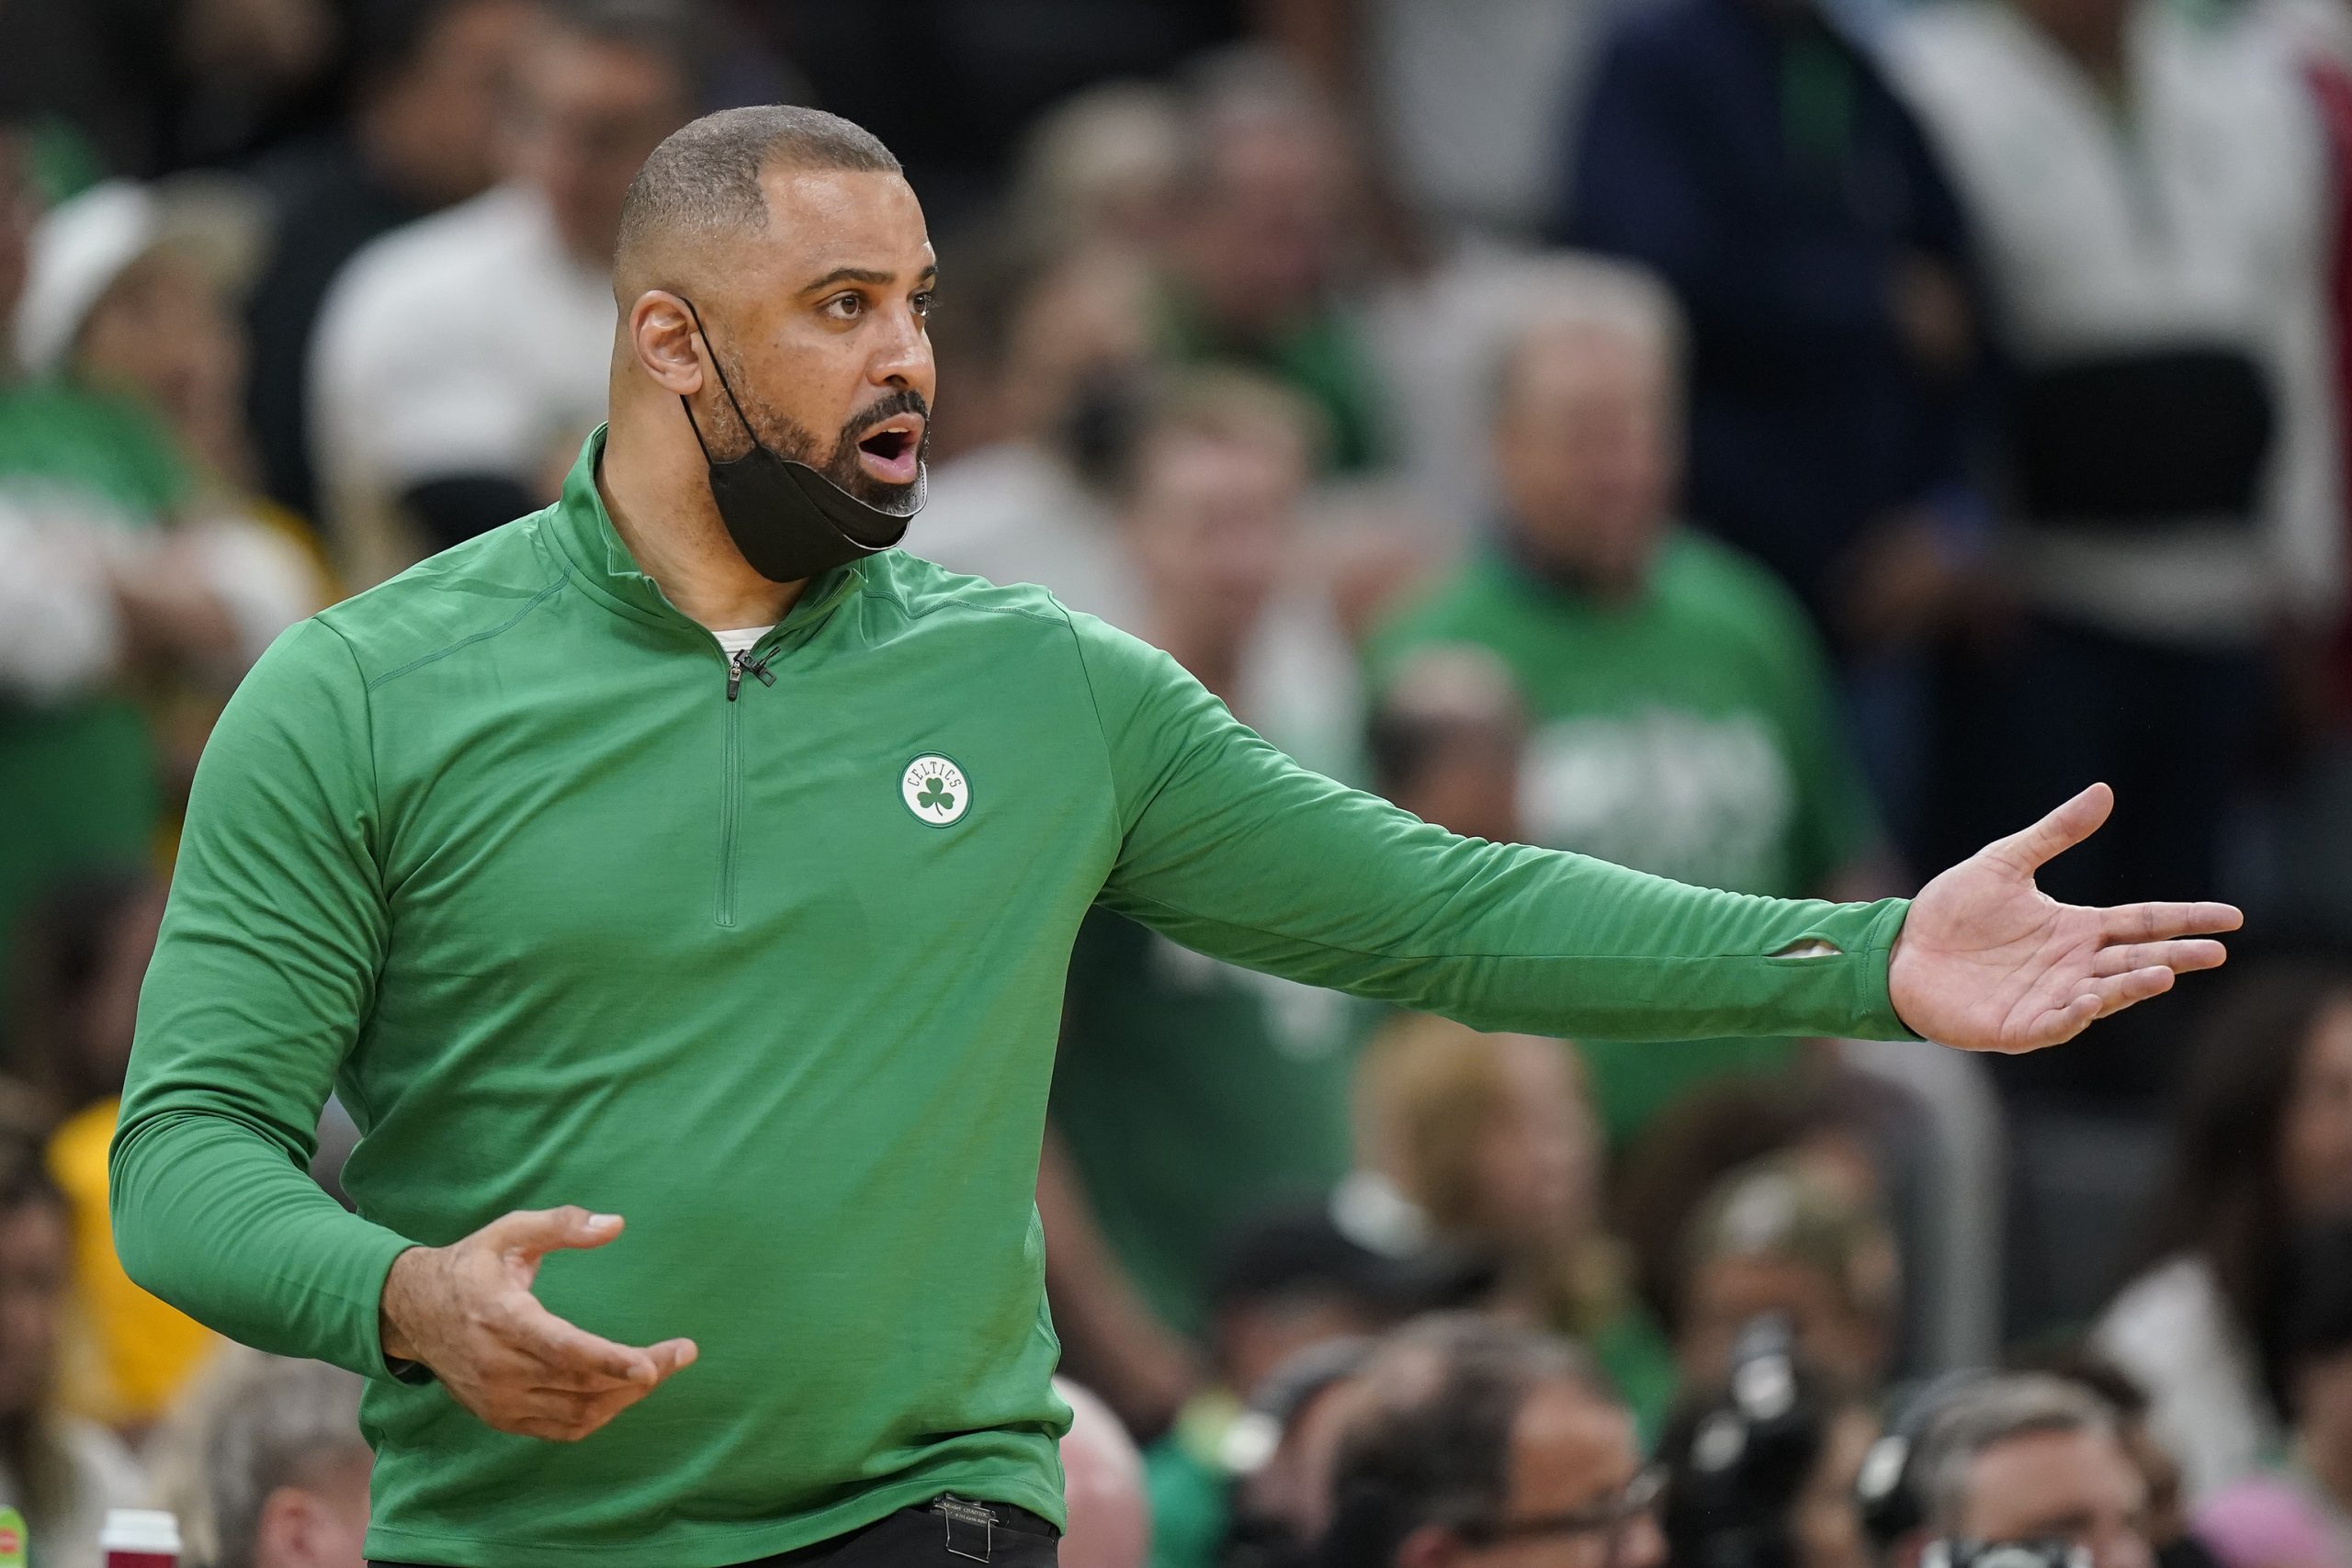 Los Celtics suspenderán a su entrenador durante un año por tener relaciones con una mujer del staff